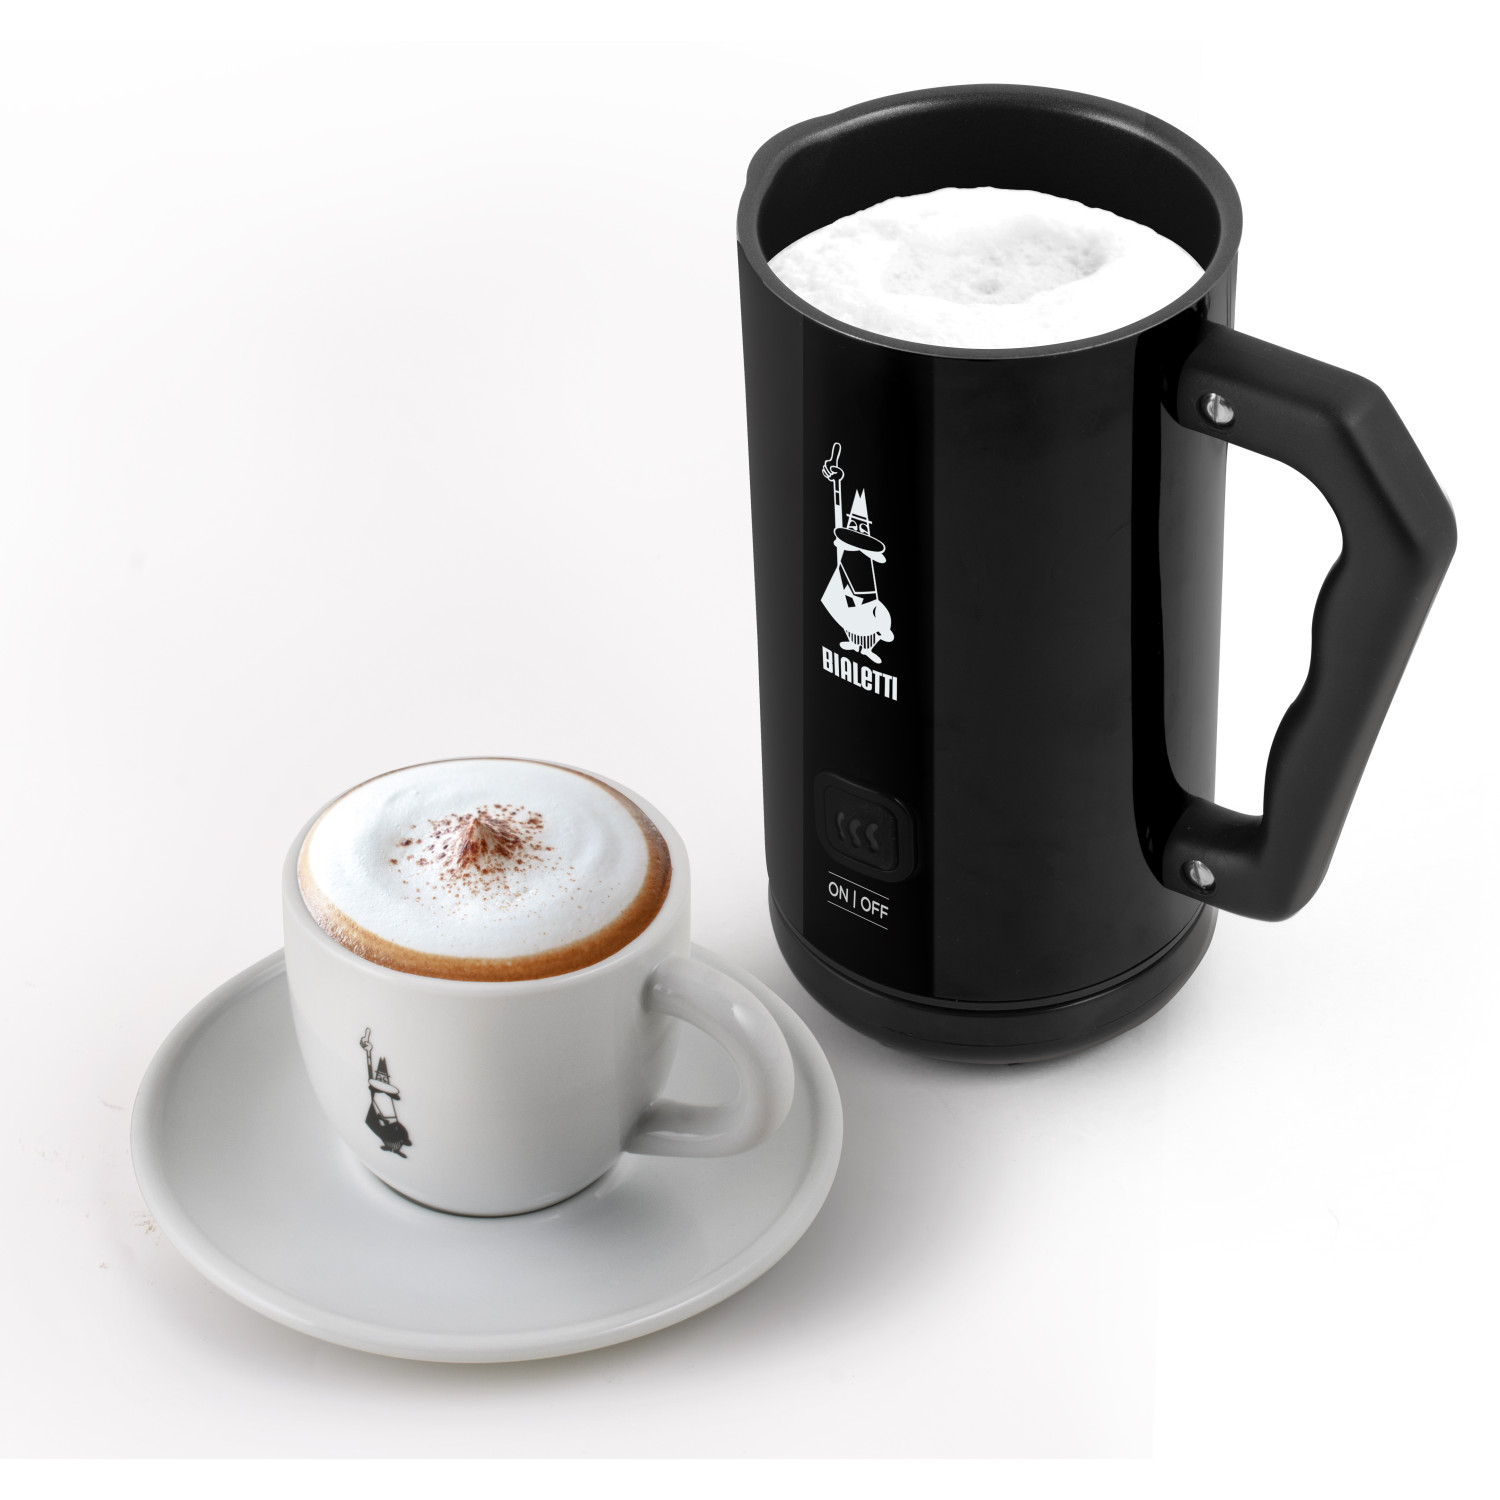 Elettric Frother BIALETTI MK02 Schwarz Espressokocher Milk